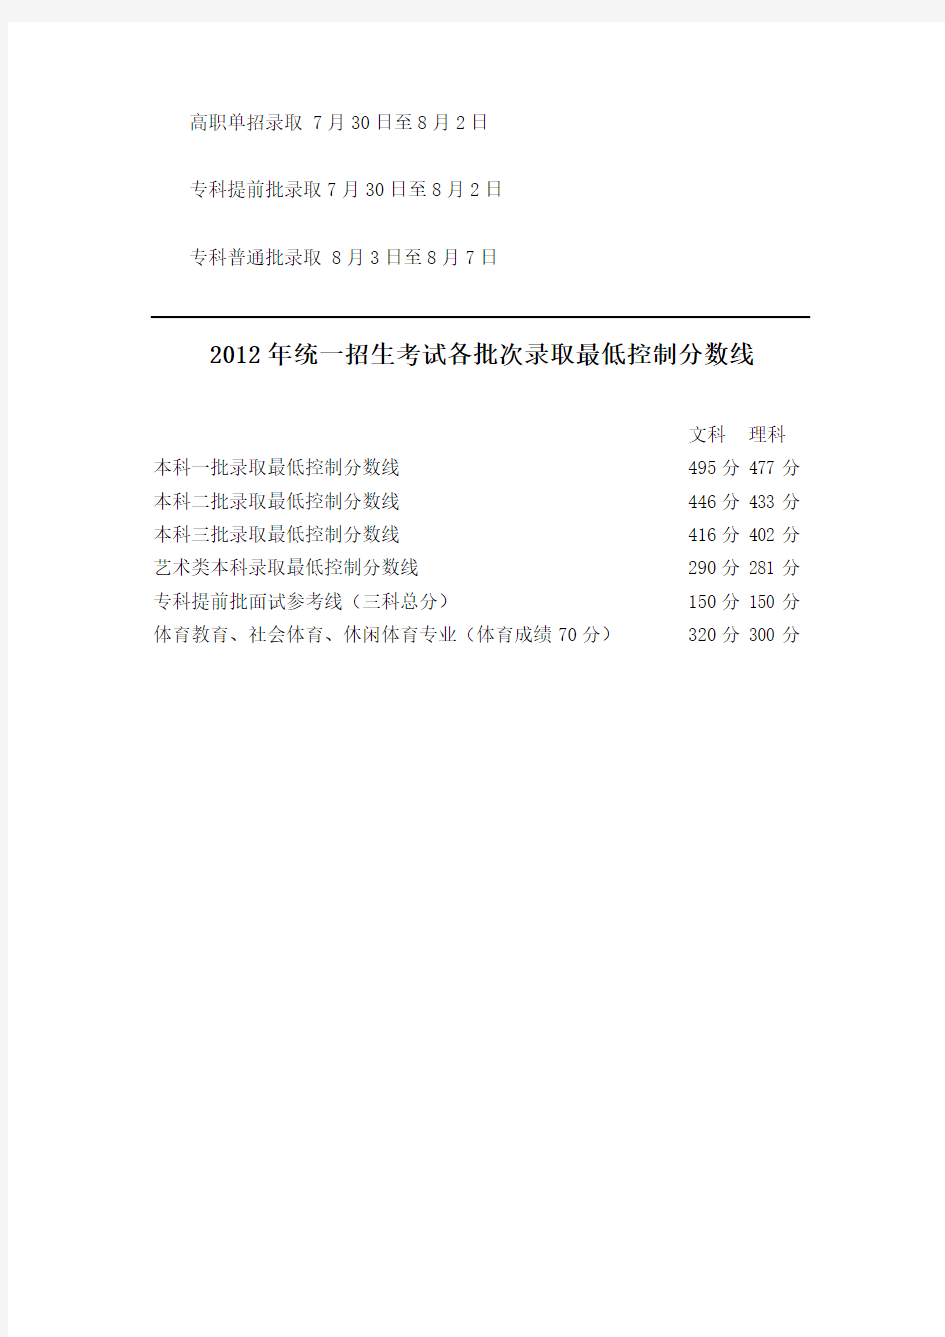 2013年北京高考分数线公布